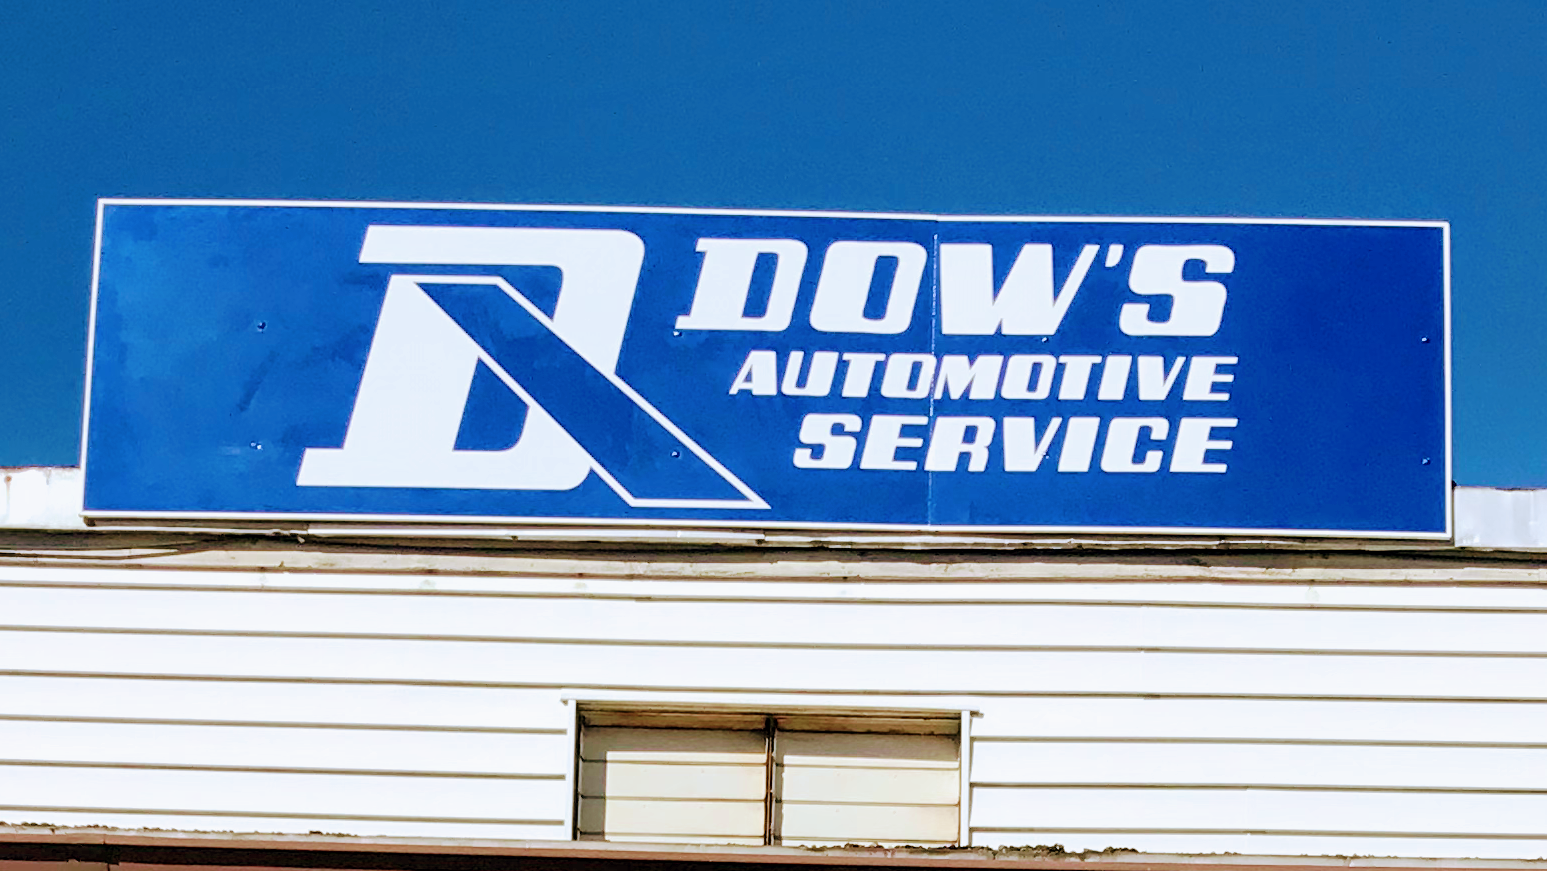 Dow's Automotive Service